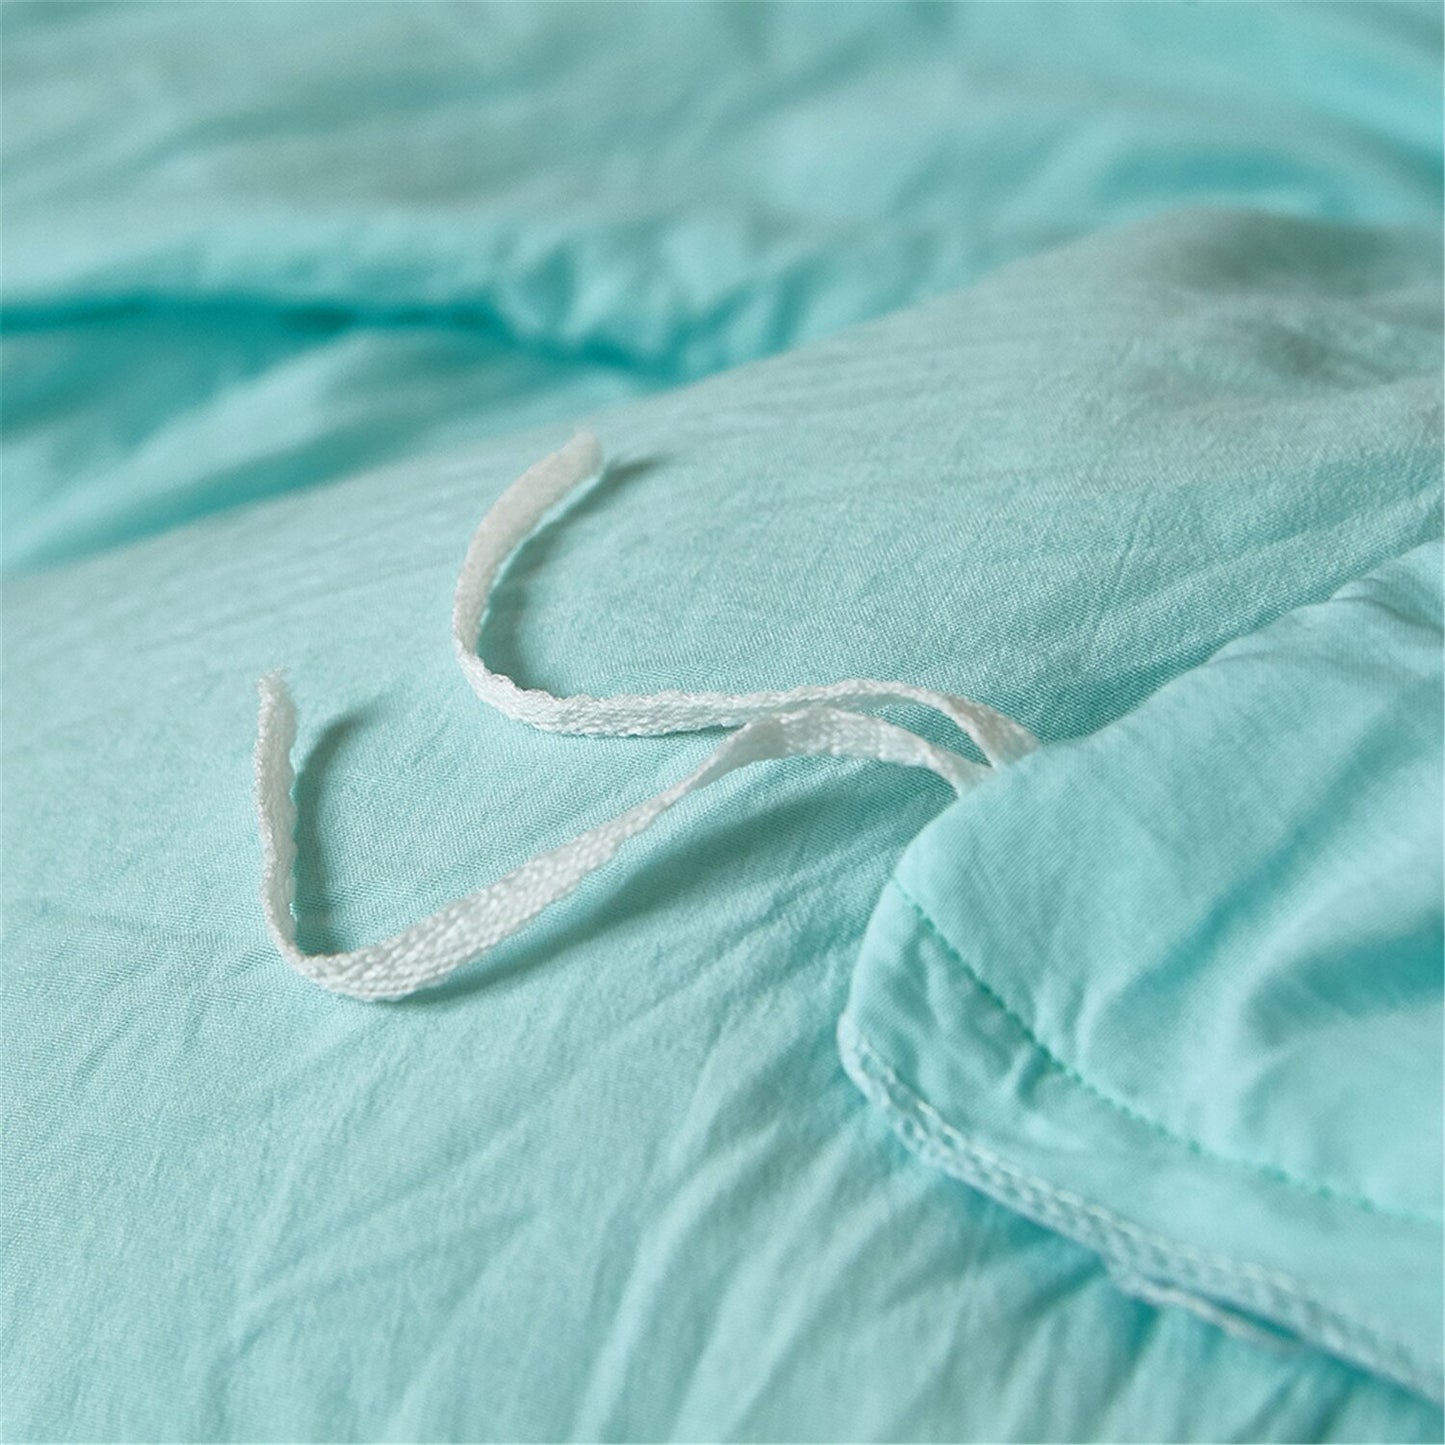 Cotton bedding Duvet Cover Bed linen Set